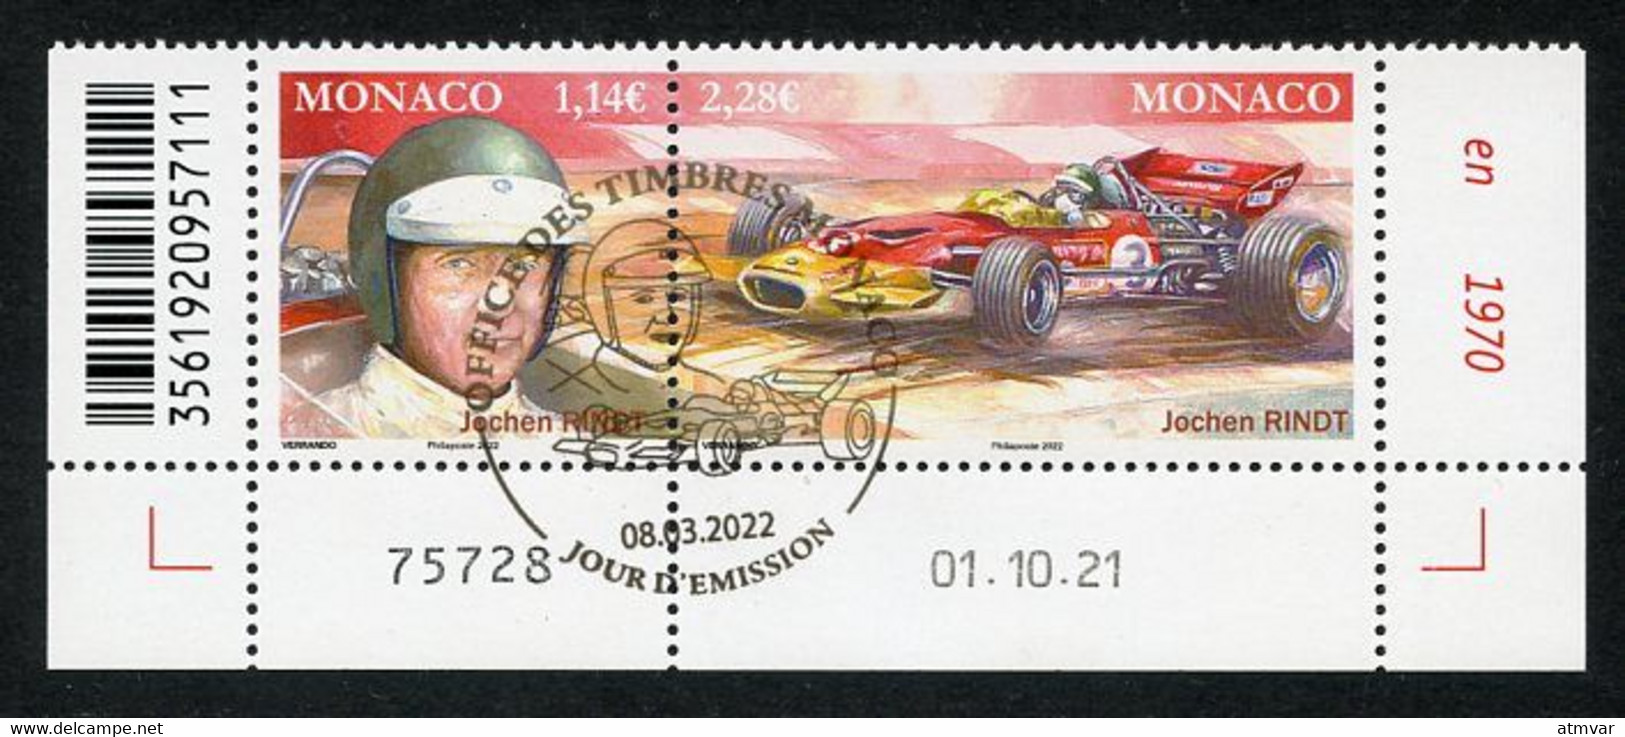 MONACO (2022) Pilotes Mythiques, Formula Formule 1, F1, Jochen Rindt (1942-1970), Grand Prix, Lotus 72 - Coin Daté - Oblitérés